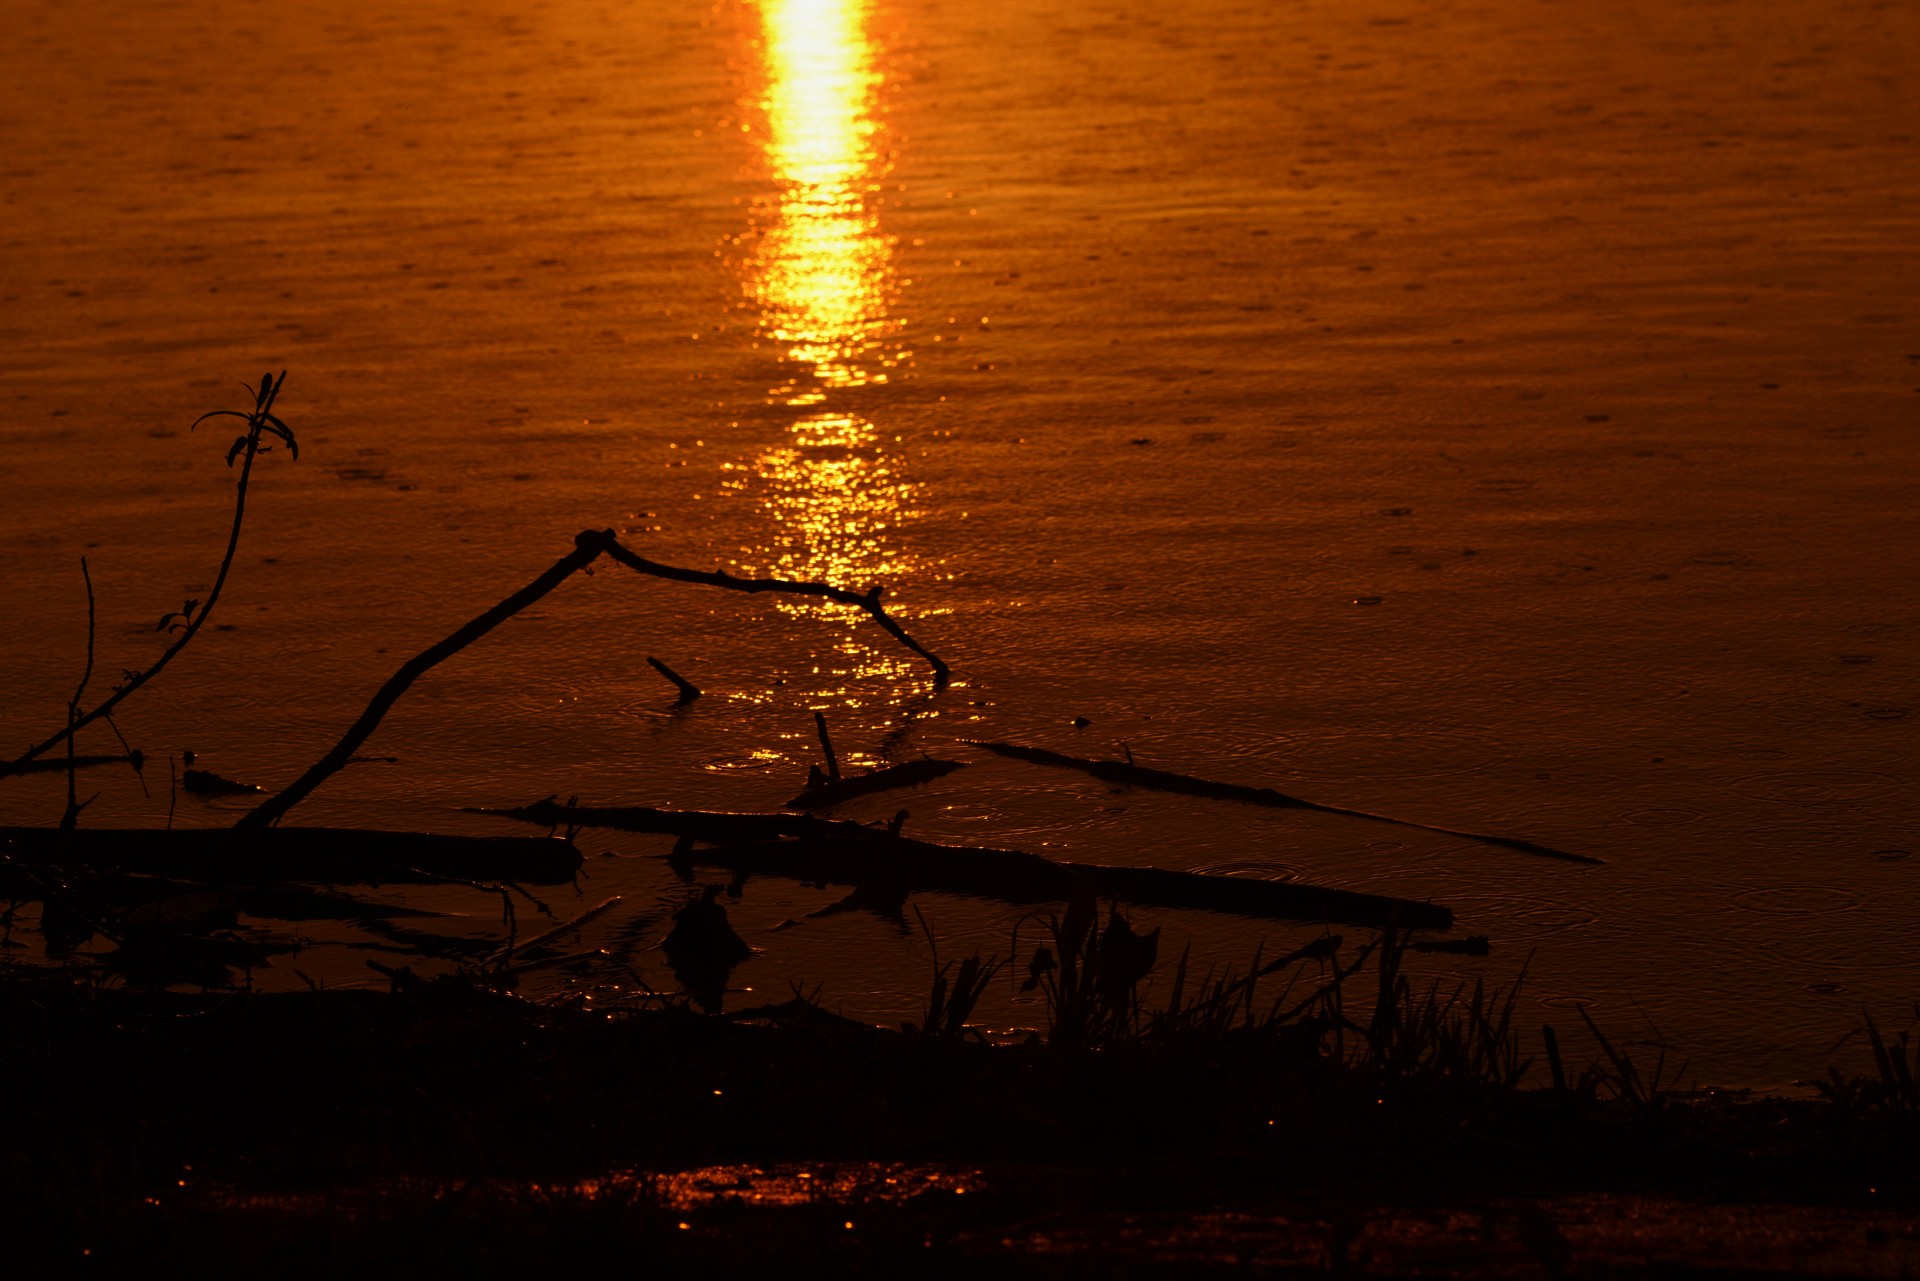 sunrise reflection pond free photo